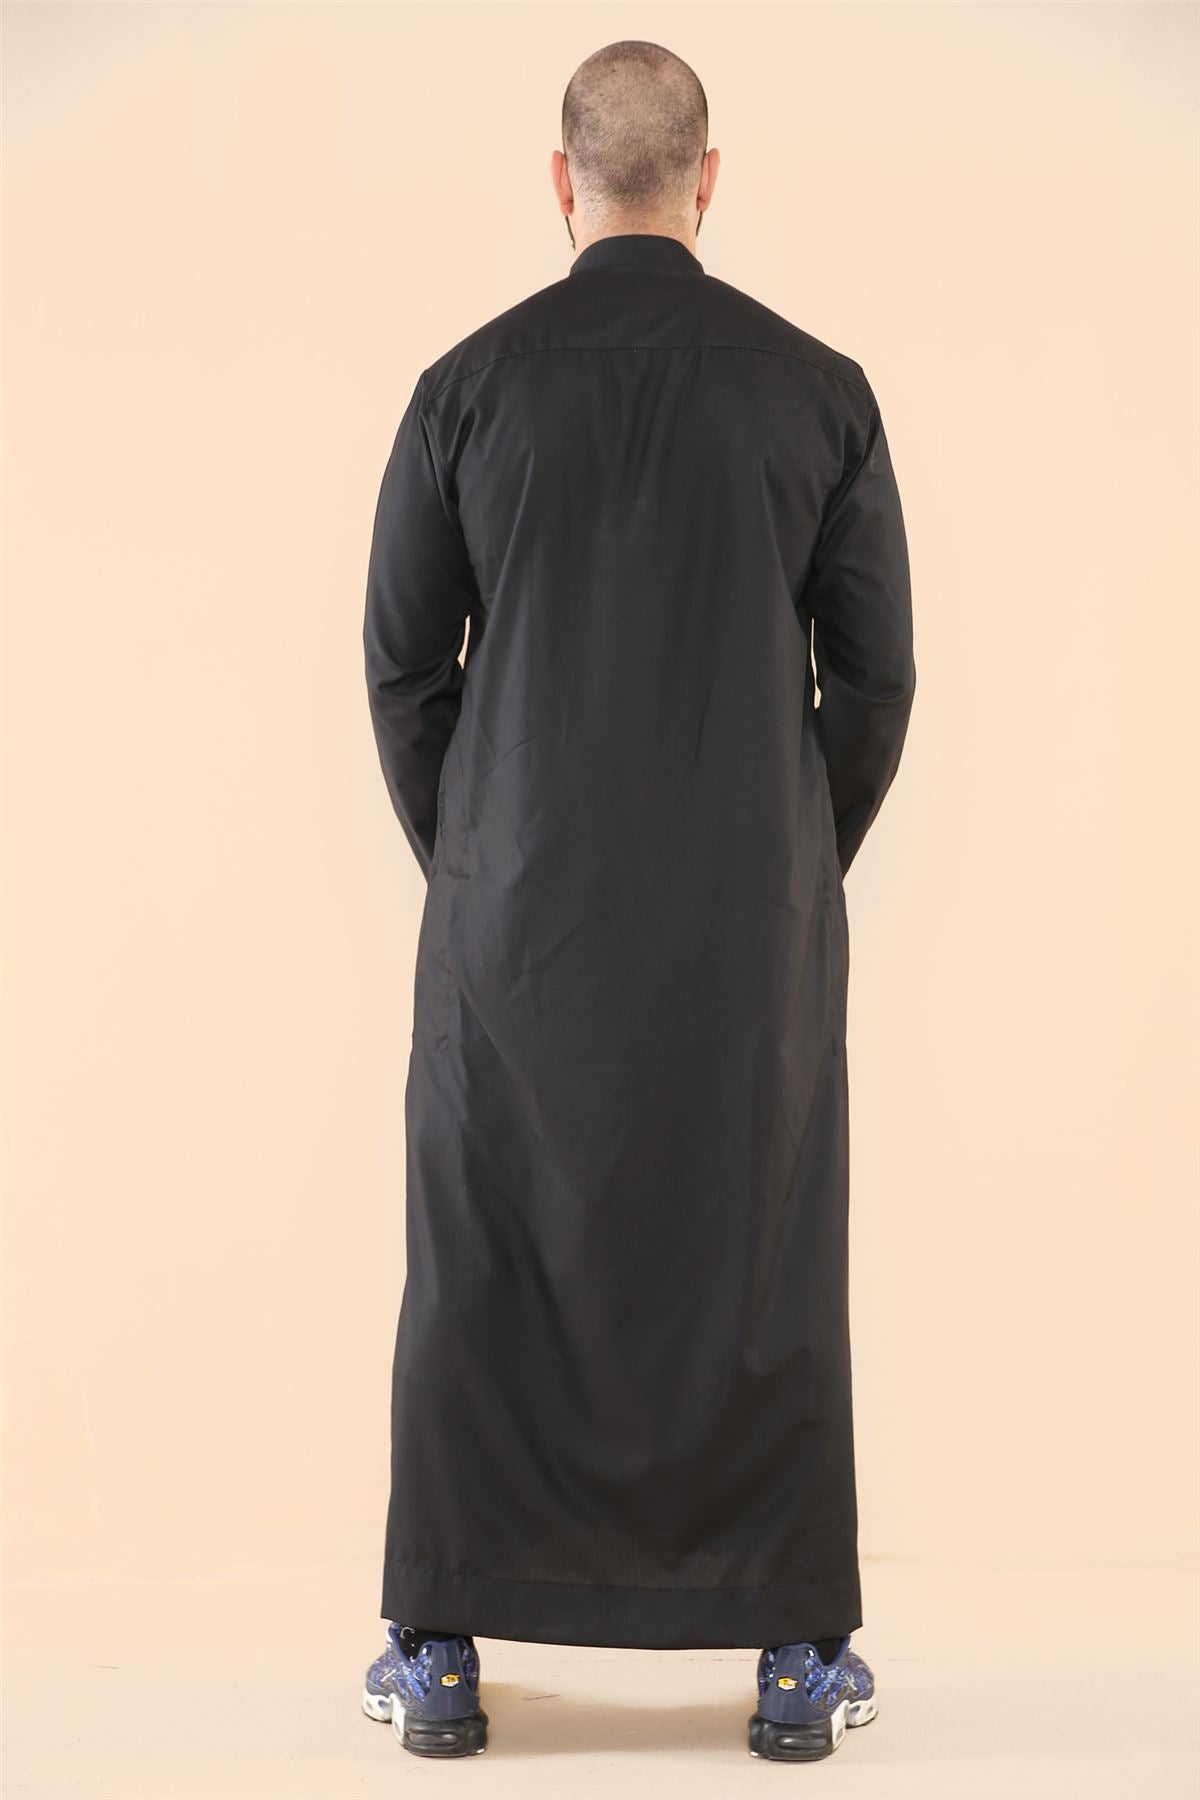 Herren Thobe Jubba Nehru Kragen Islamische Kleidung Muslim Kleid Robe Saudi